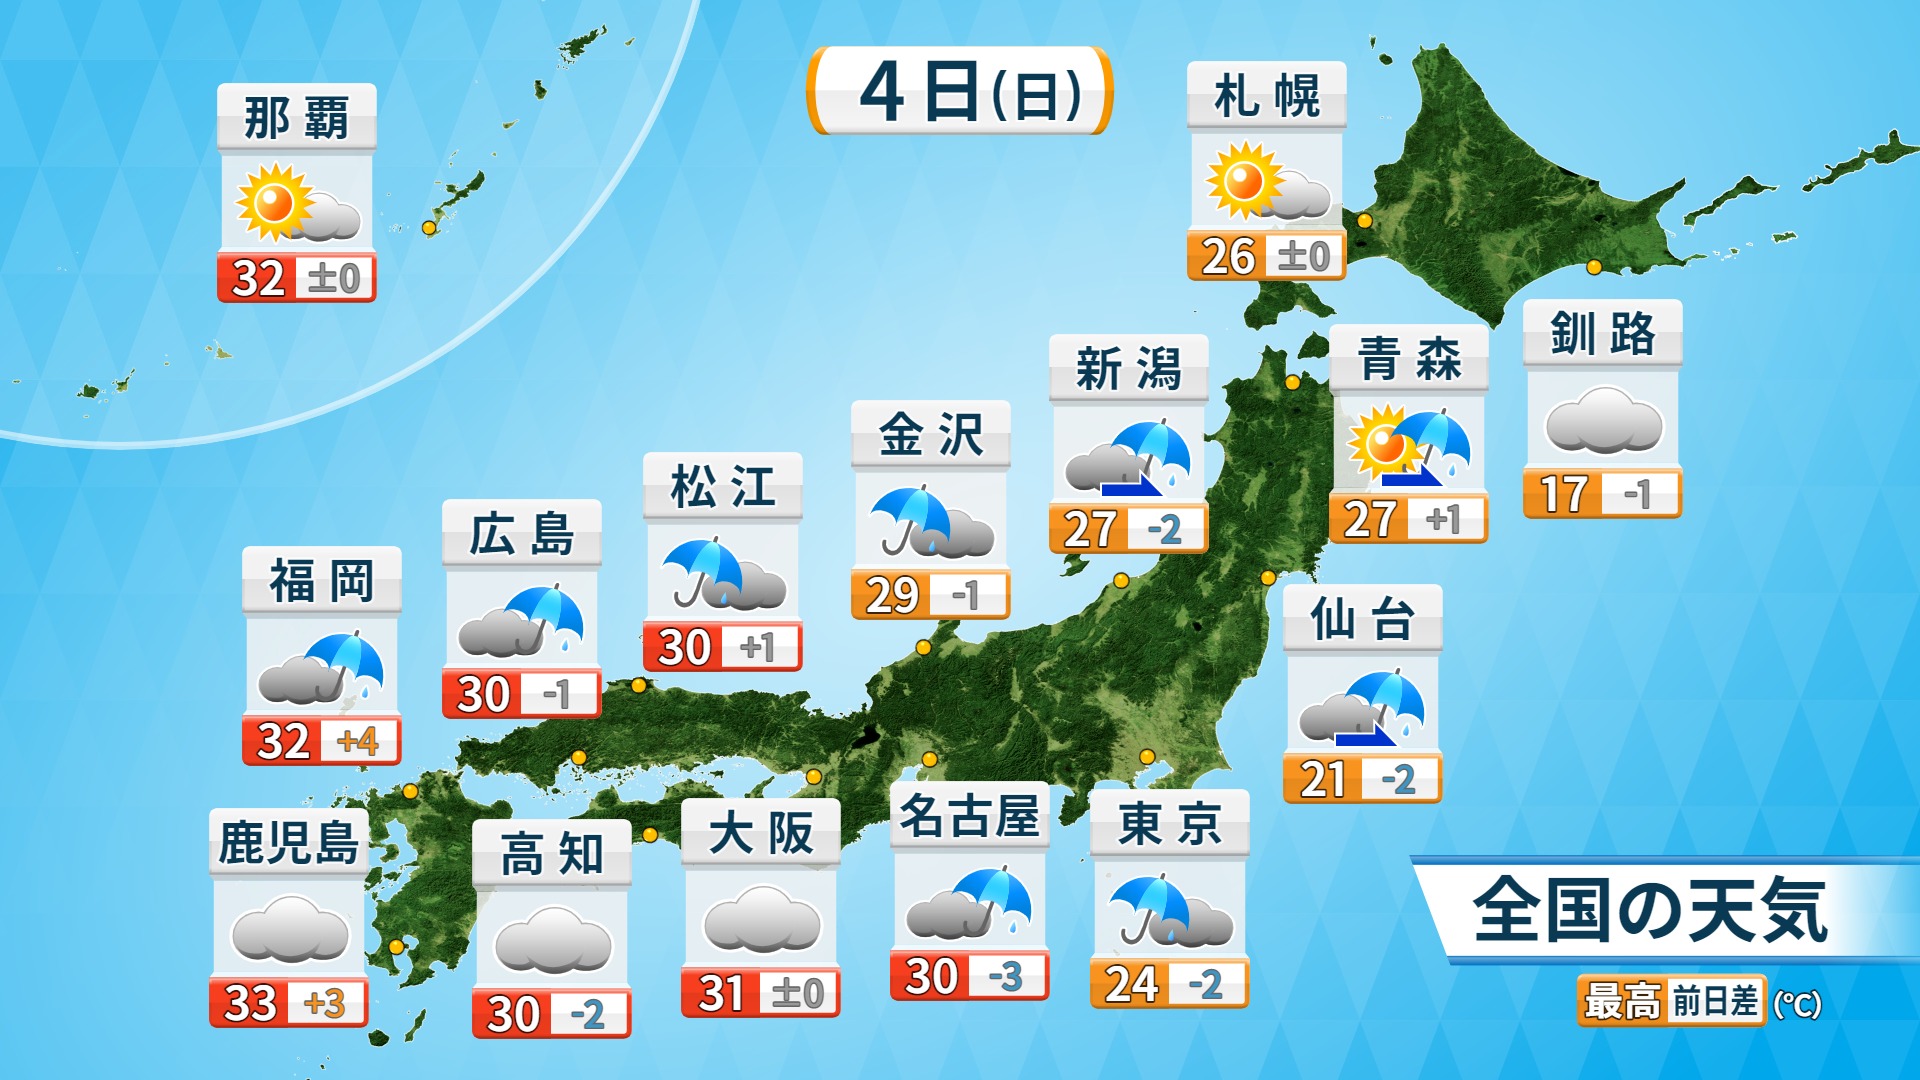 福岡良子official Site 天気のポイント 21年7月5日 月 日本海側で大雨のおそれ